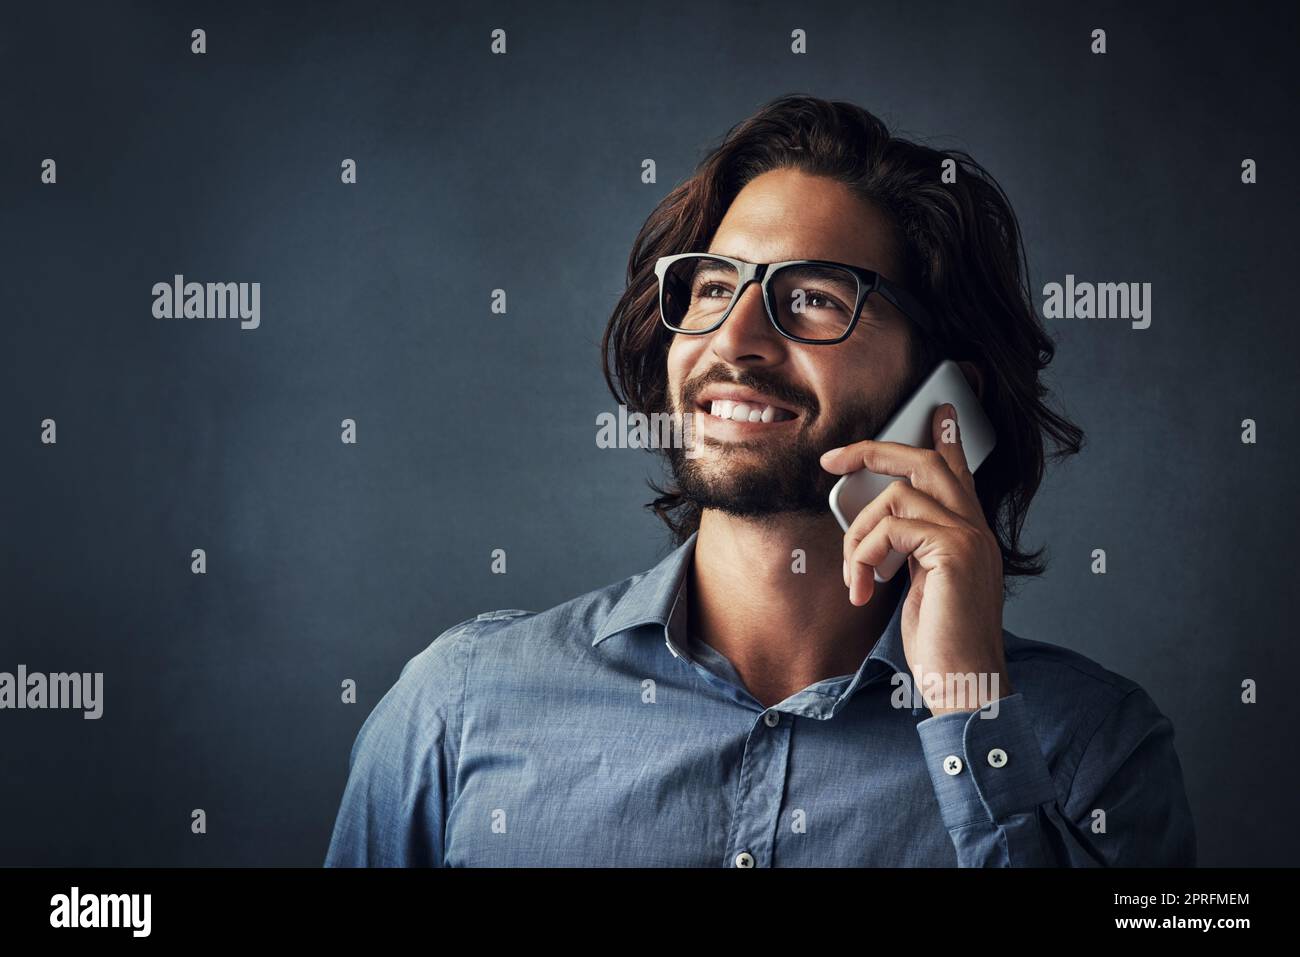 Ich rufe in Bezug auf deine Werbeanzeige an. Studio-Aufnahme eines hübschen jungen Mannes, der auf seinem Handy spricht, während er vor einem grauen Hintergrund steht. Stockfoto